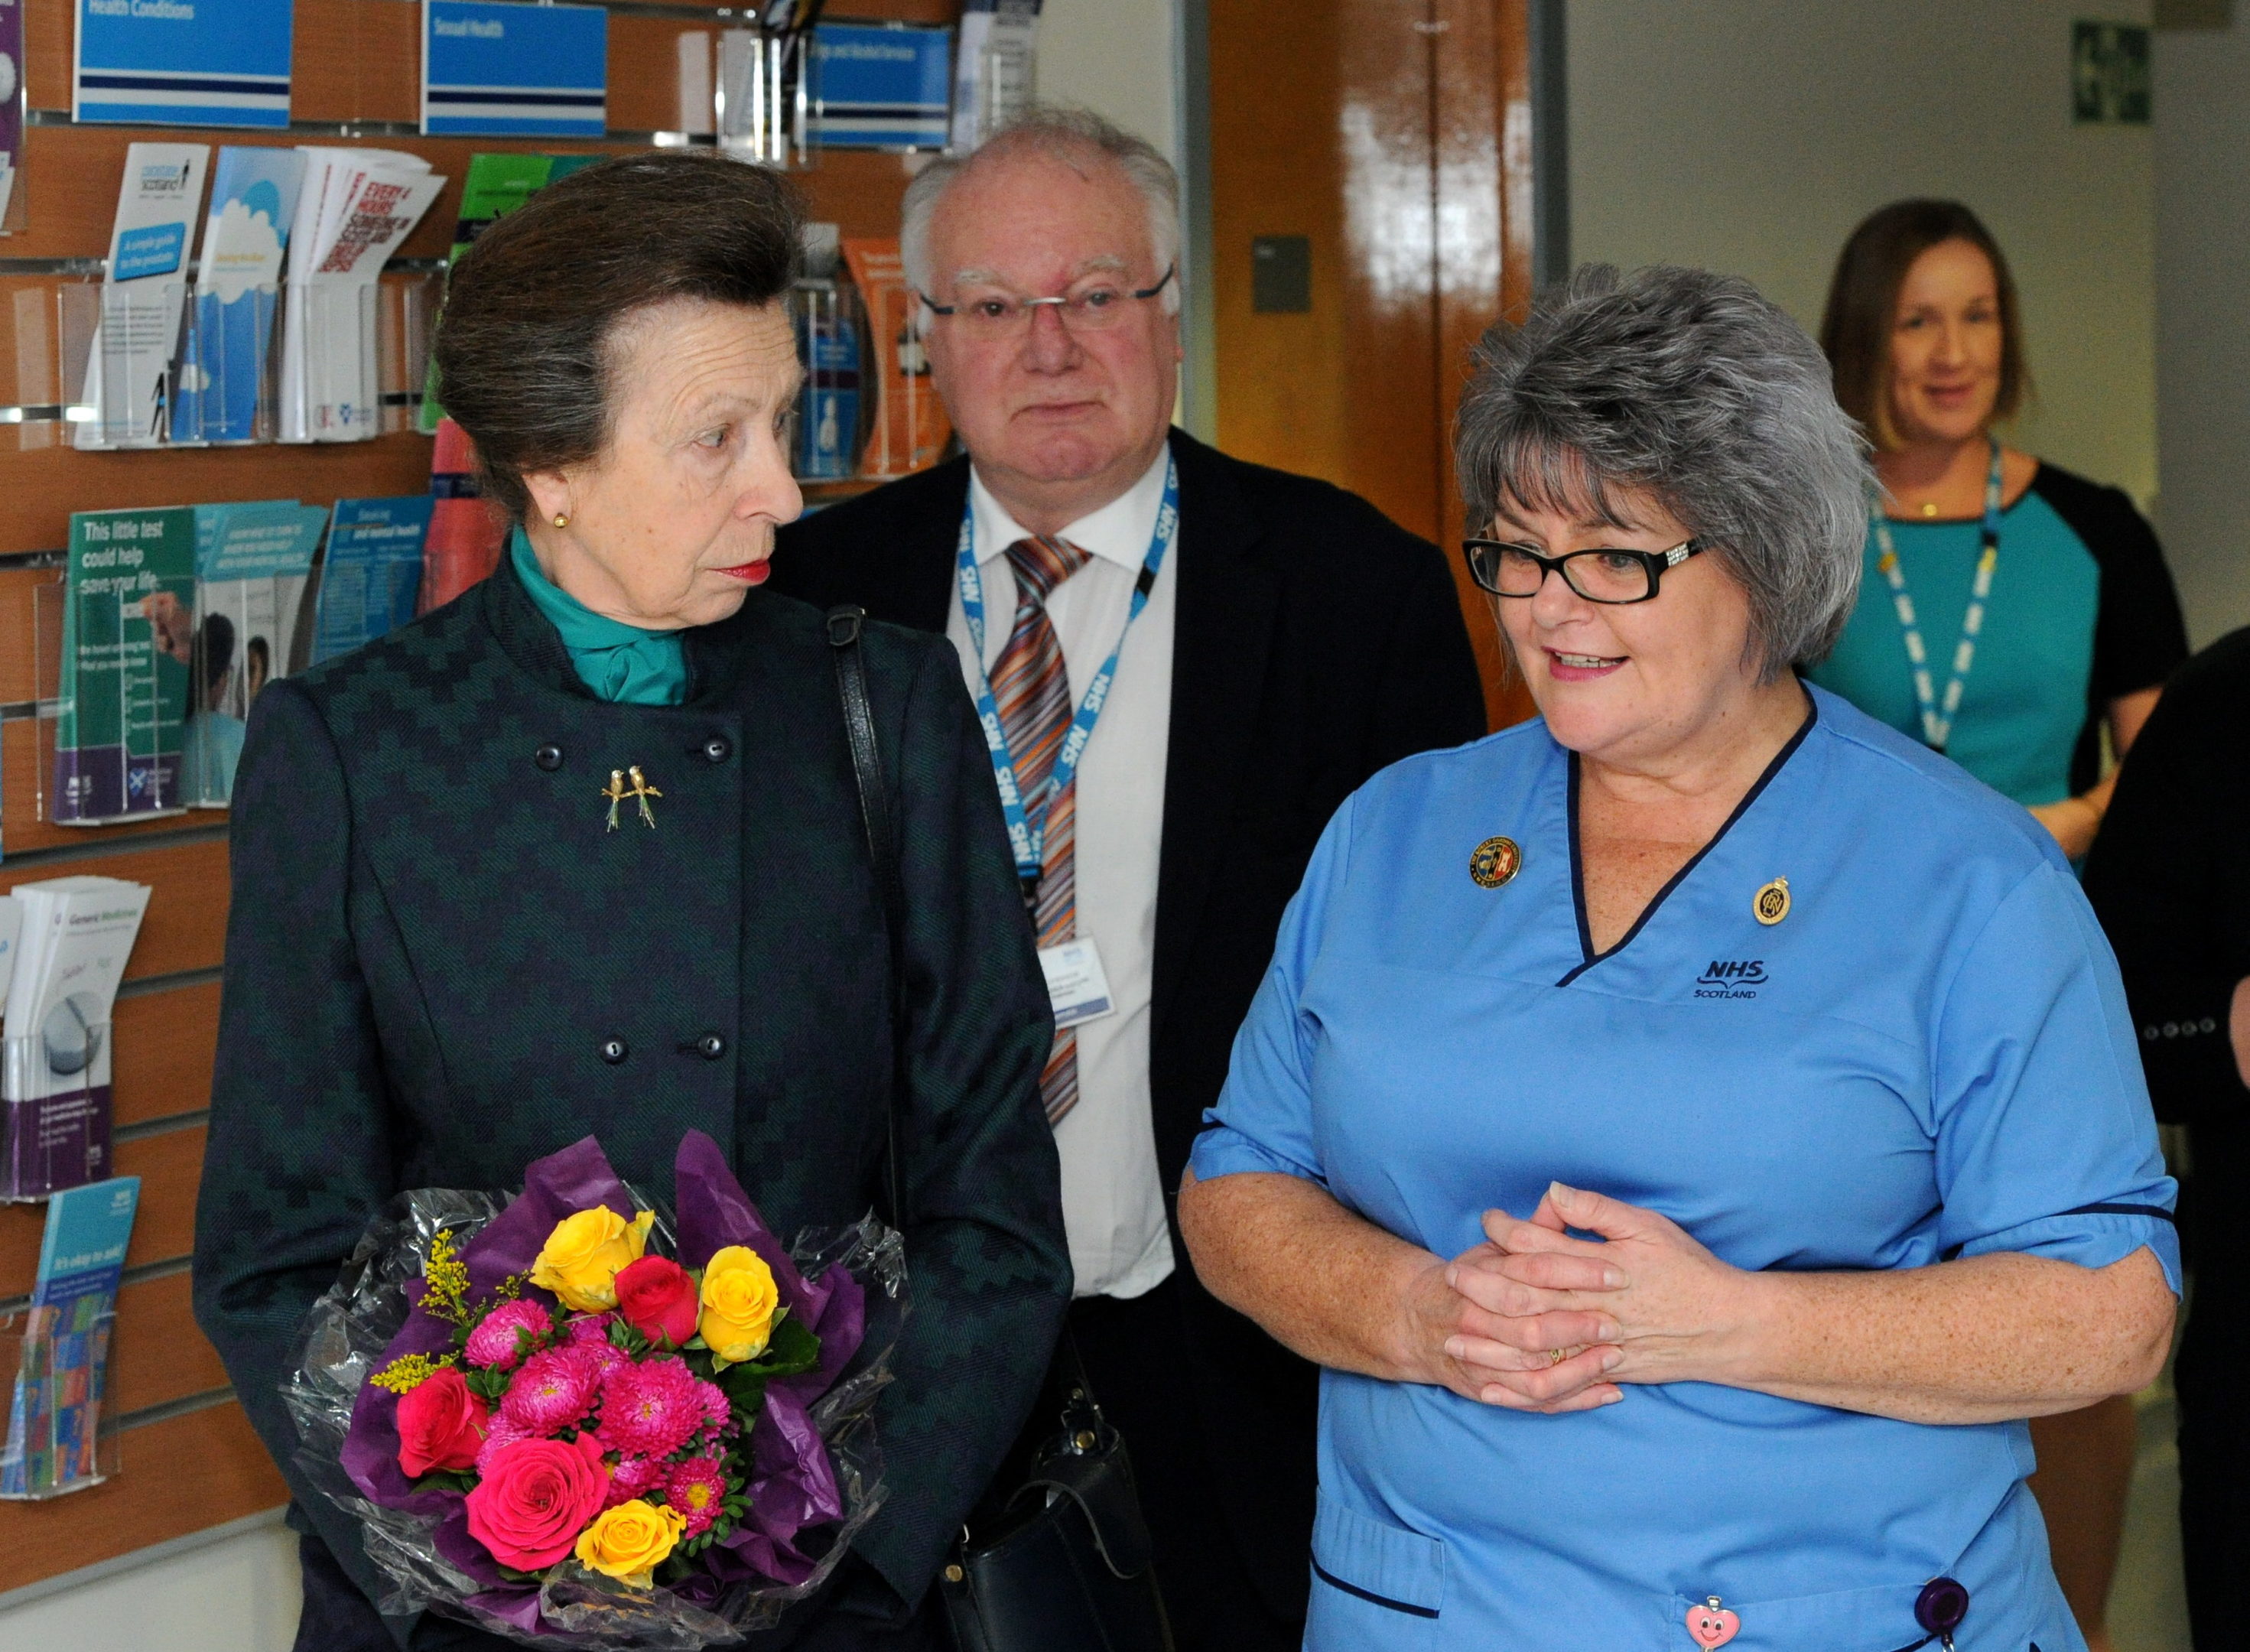 Staff nurse Linda Watt showing Princess Anne around the wards.